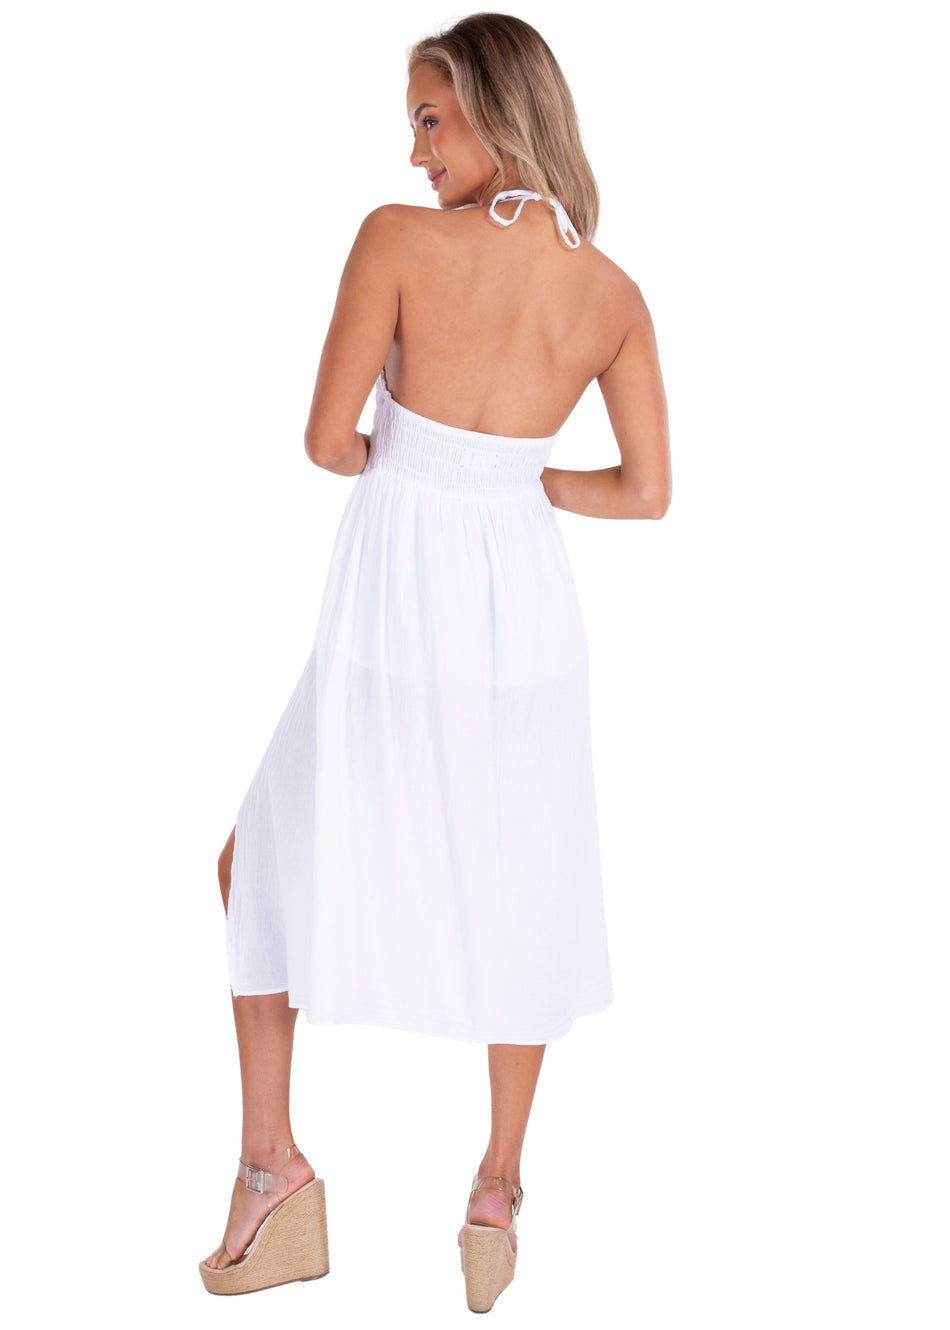 NW1143 - White Cotton Dress